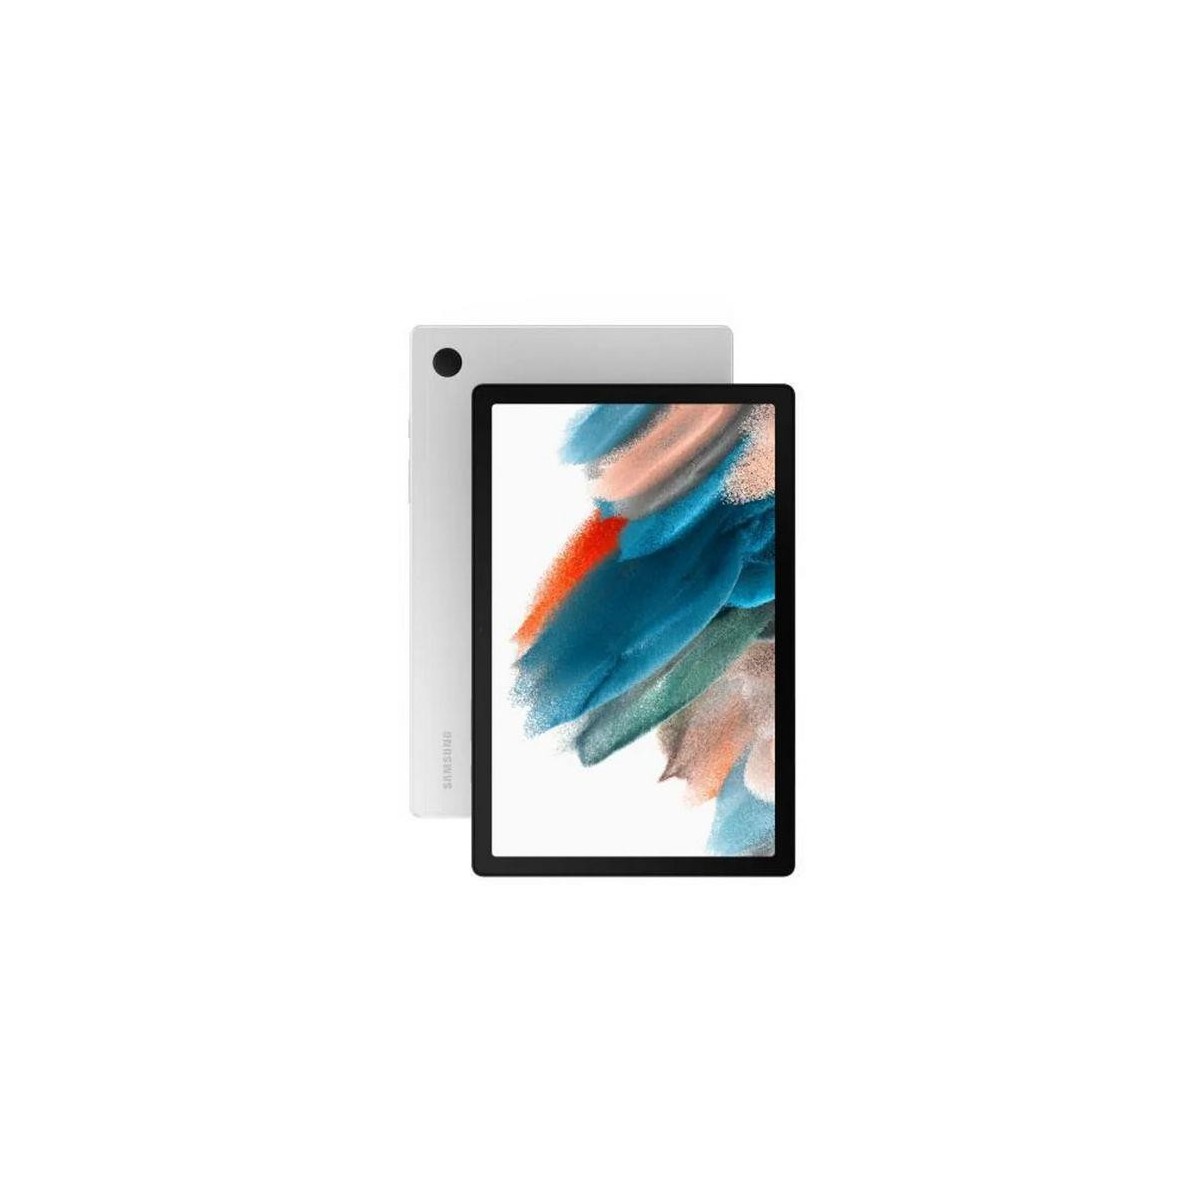 Samsung GALAXY TAB A 64 GB Silver - Tablet